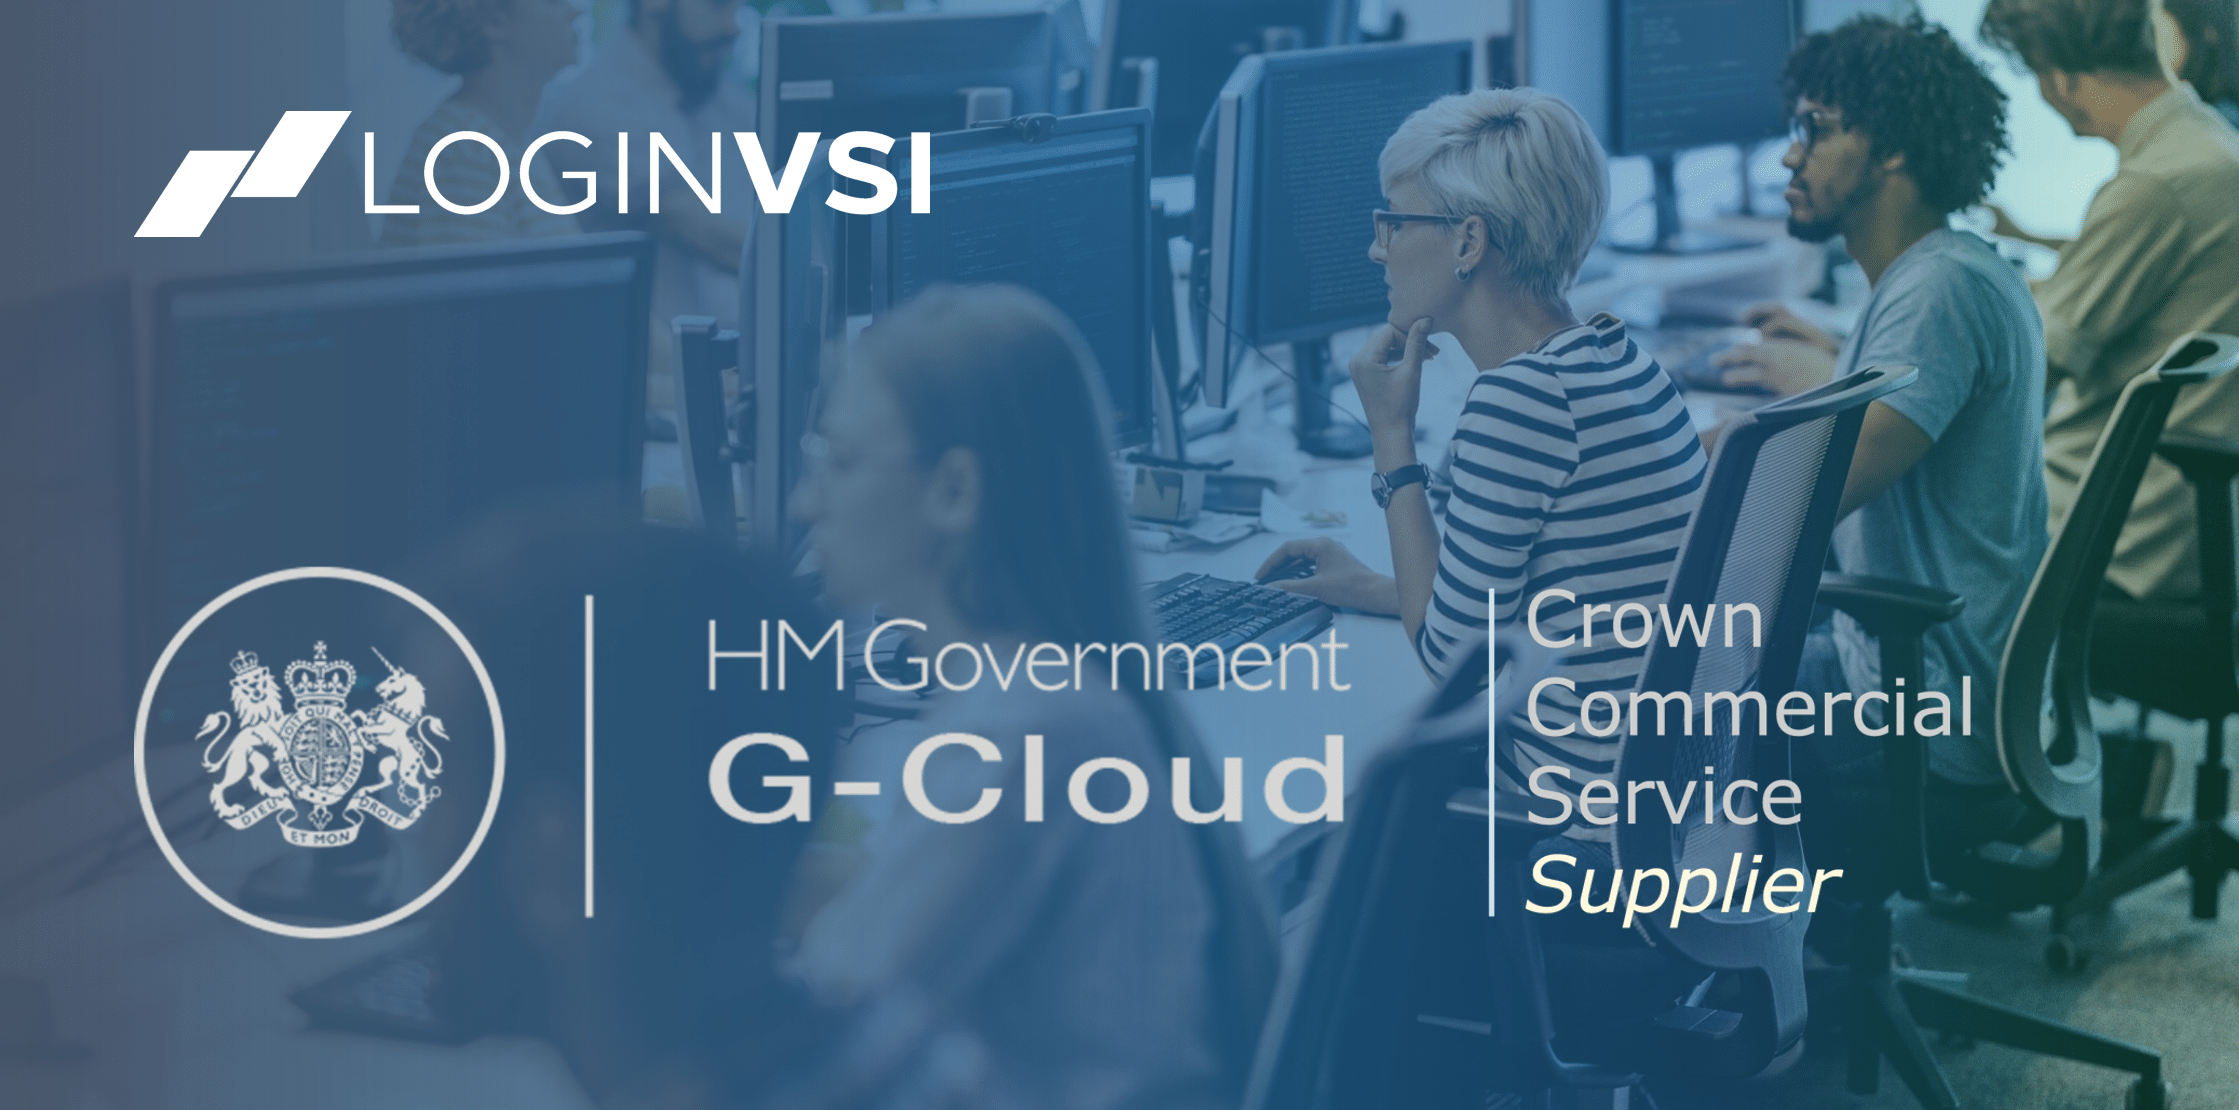 Login VSI Approved Supplier on UK’s G-Cloud 12 Framework